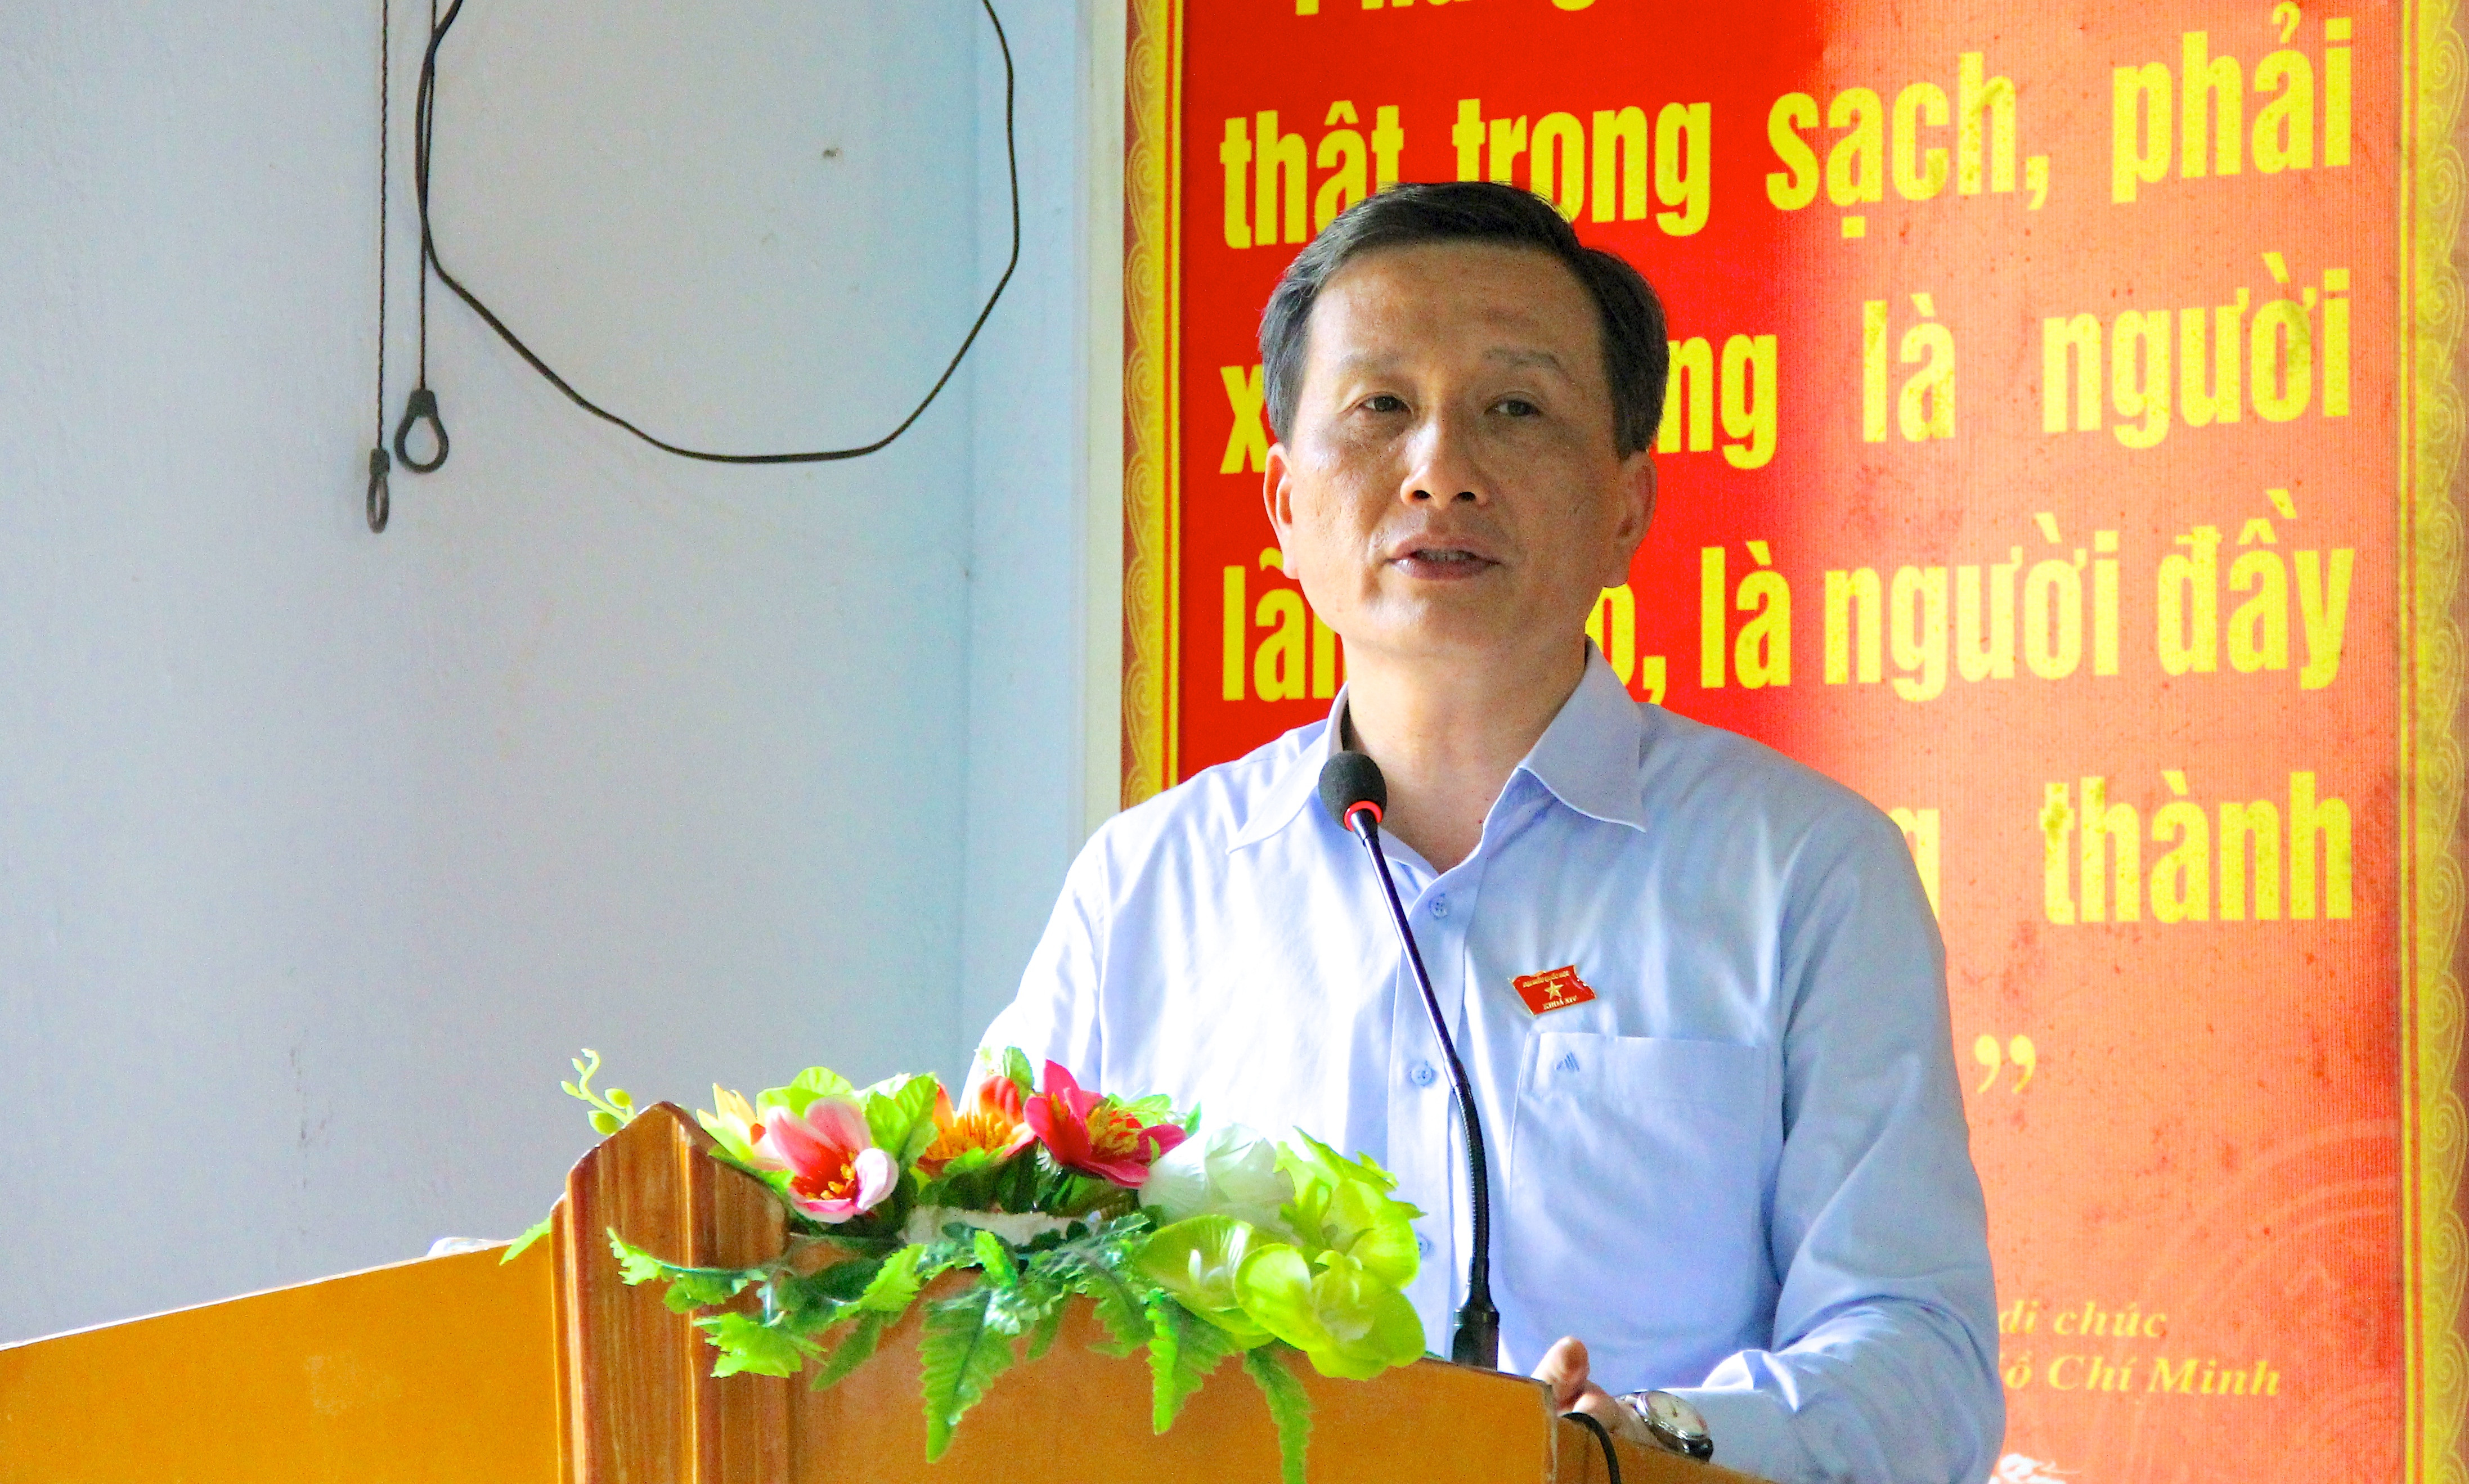 Đại biểu Lê Quang Huy thông tin đến cử tri kết quả của kỳ họp thứ 5, Quốc hội khóa XIV, cũng như hoạt động của đoàn ĐBQH Nghệ An tại kỳ họp. Ảnh: Mỹ Nga